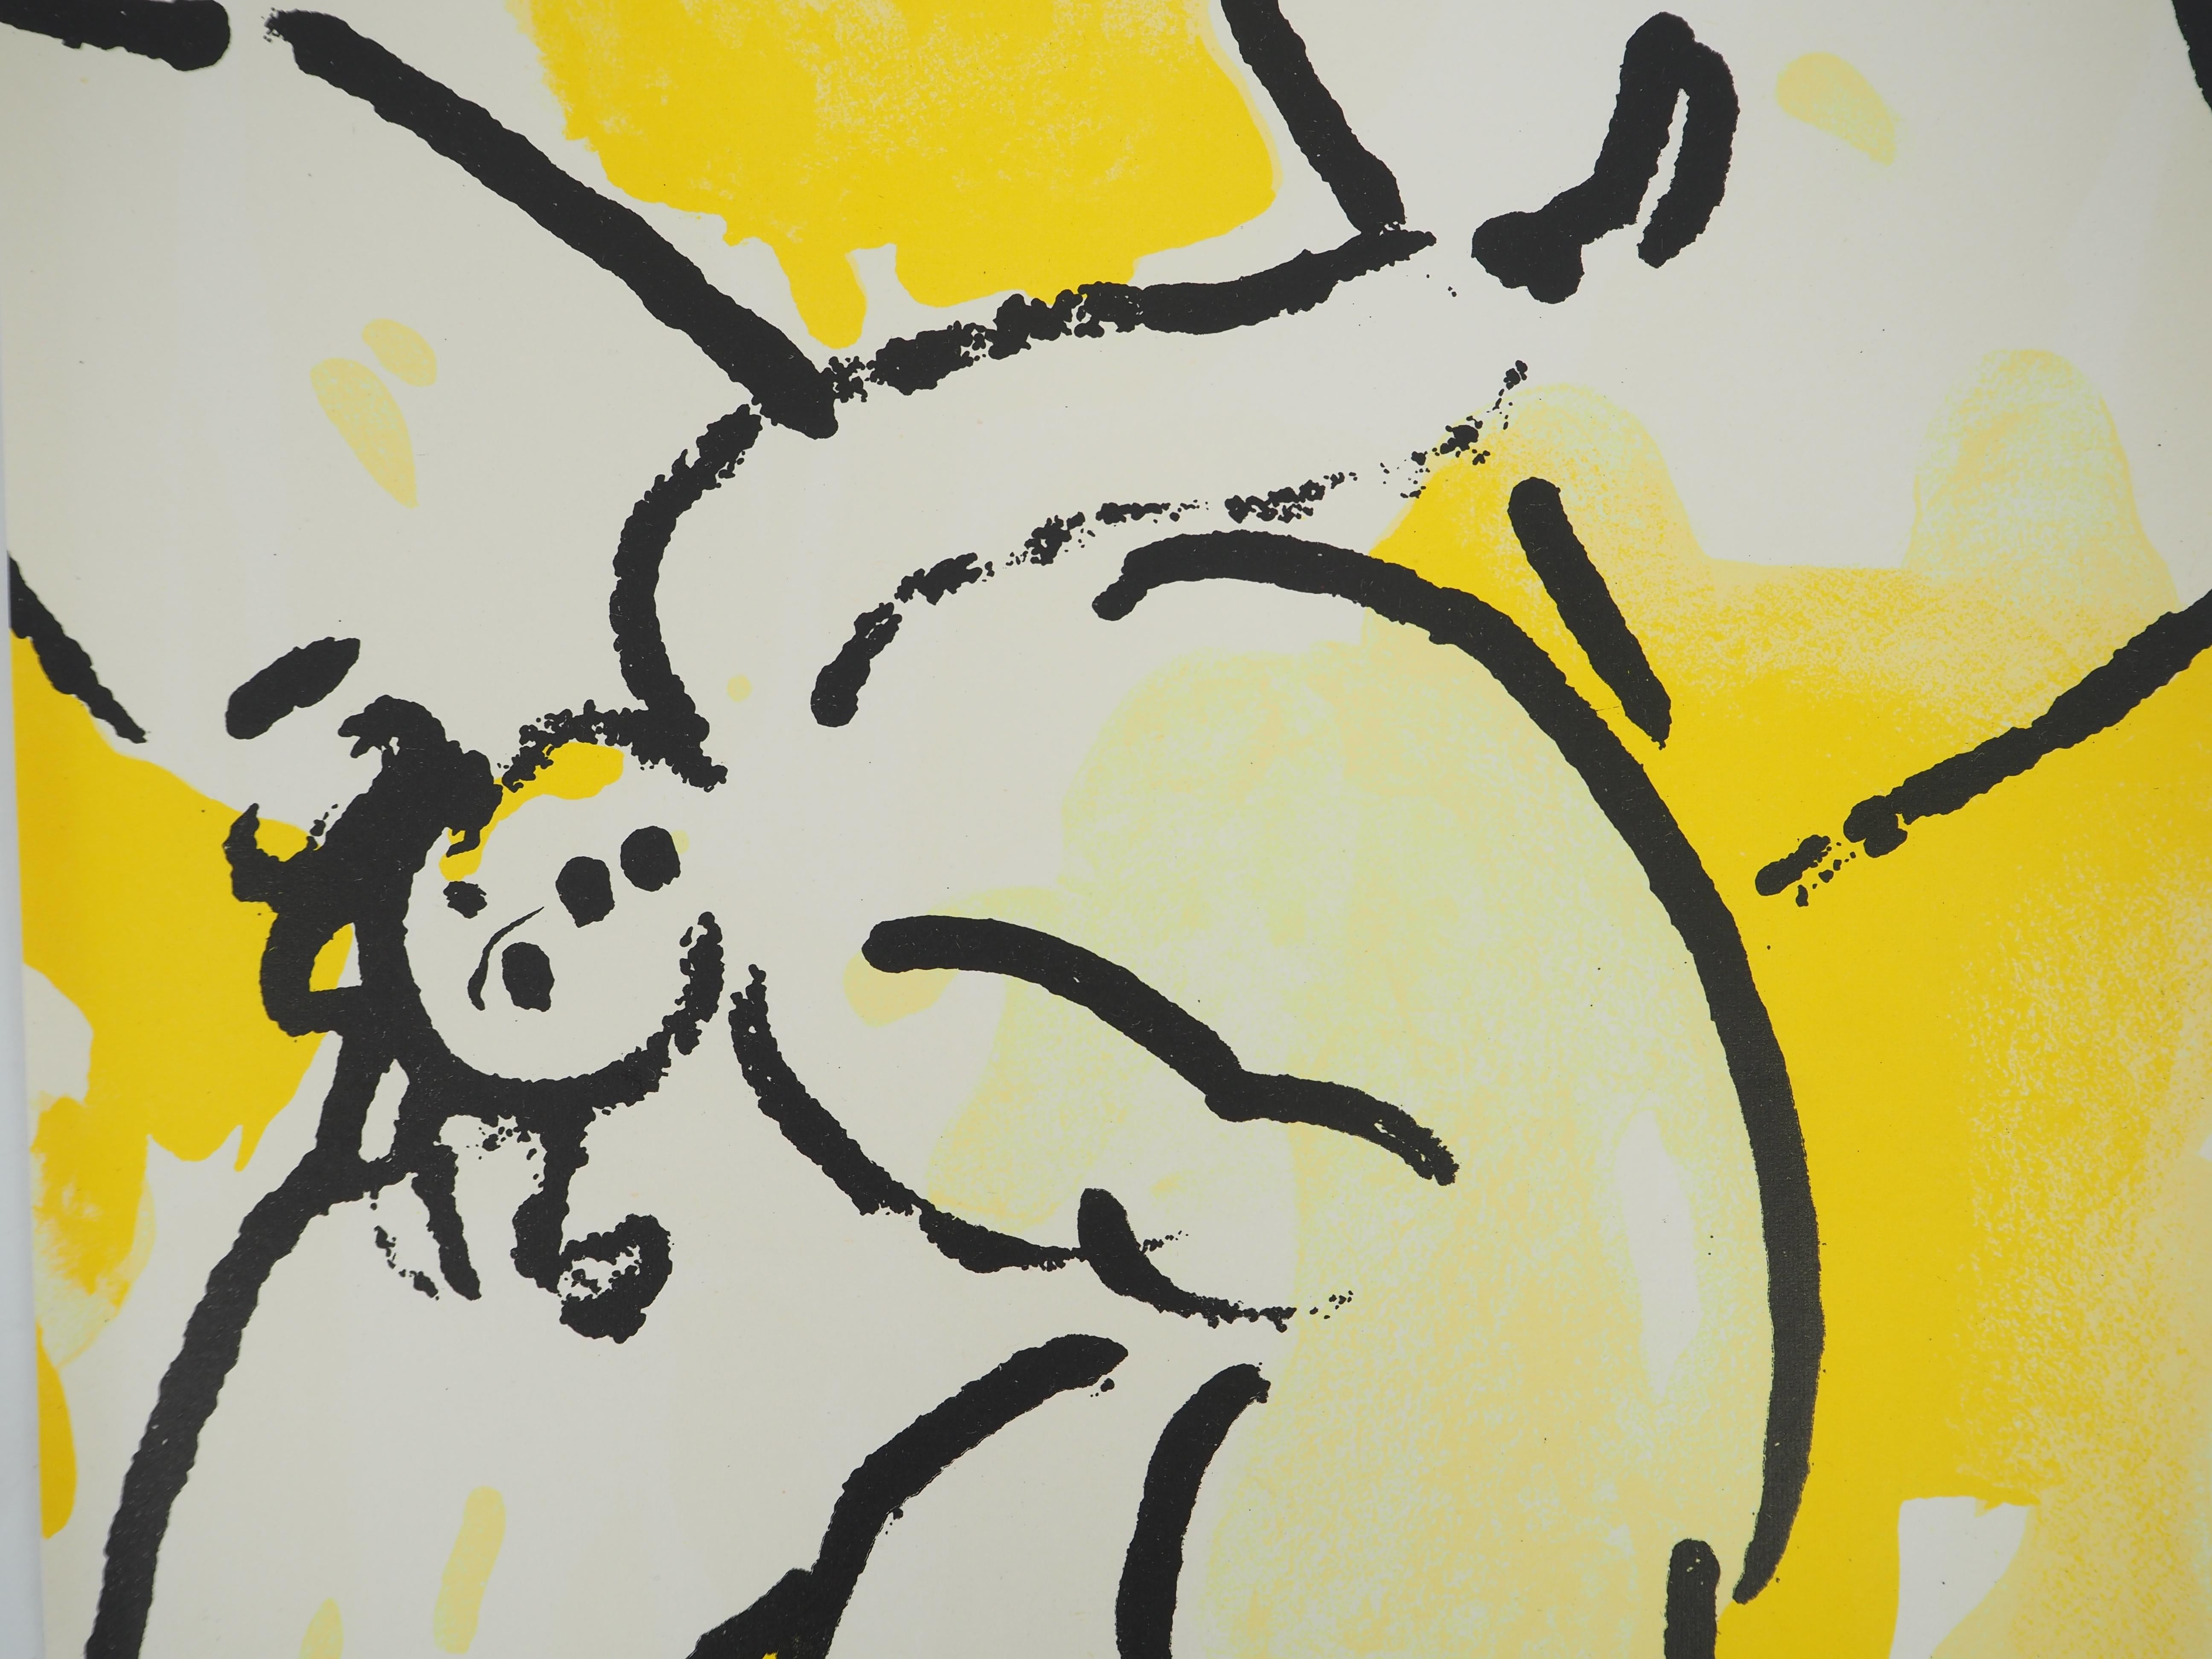 Marc Chagall (1887-1985) 
Die Bibel, der Engel

Original-Lithographie (Werkstatt Mourlot) 
Auf Papier 37 x 26,5 cm (ca. 14,5 x 10,2 Zoll)

REFERENZ: 
Werkverzeichnis Chagall Lithographe, Mourlot #118

INFORMATION : Veröffentlicht in der Verve-Mappe